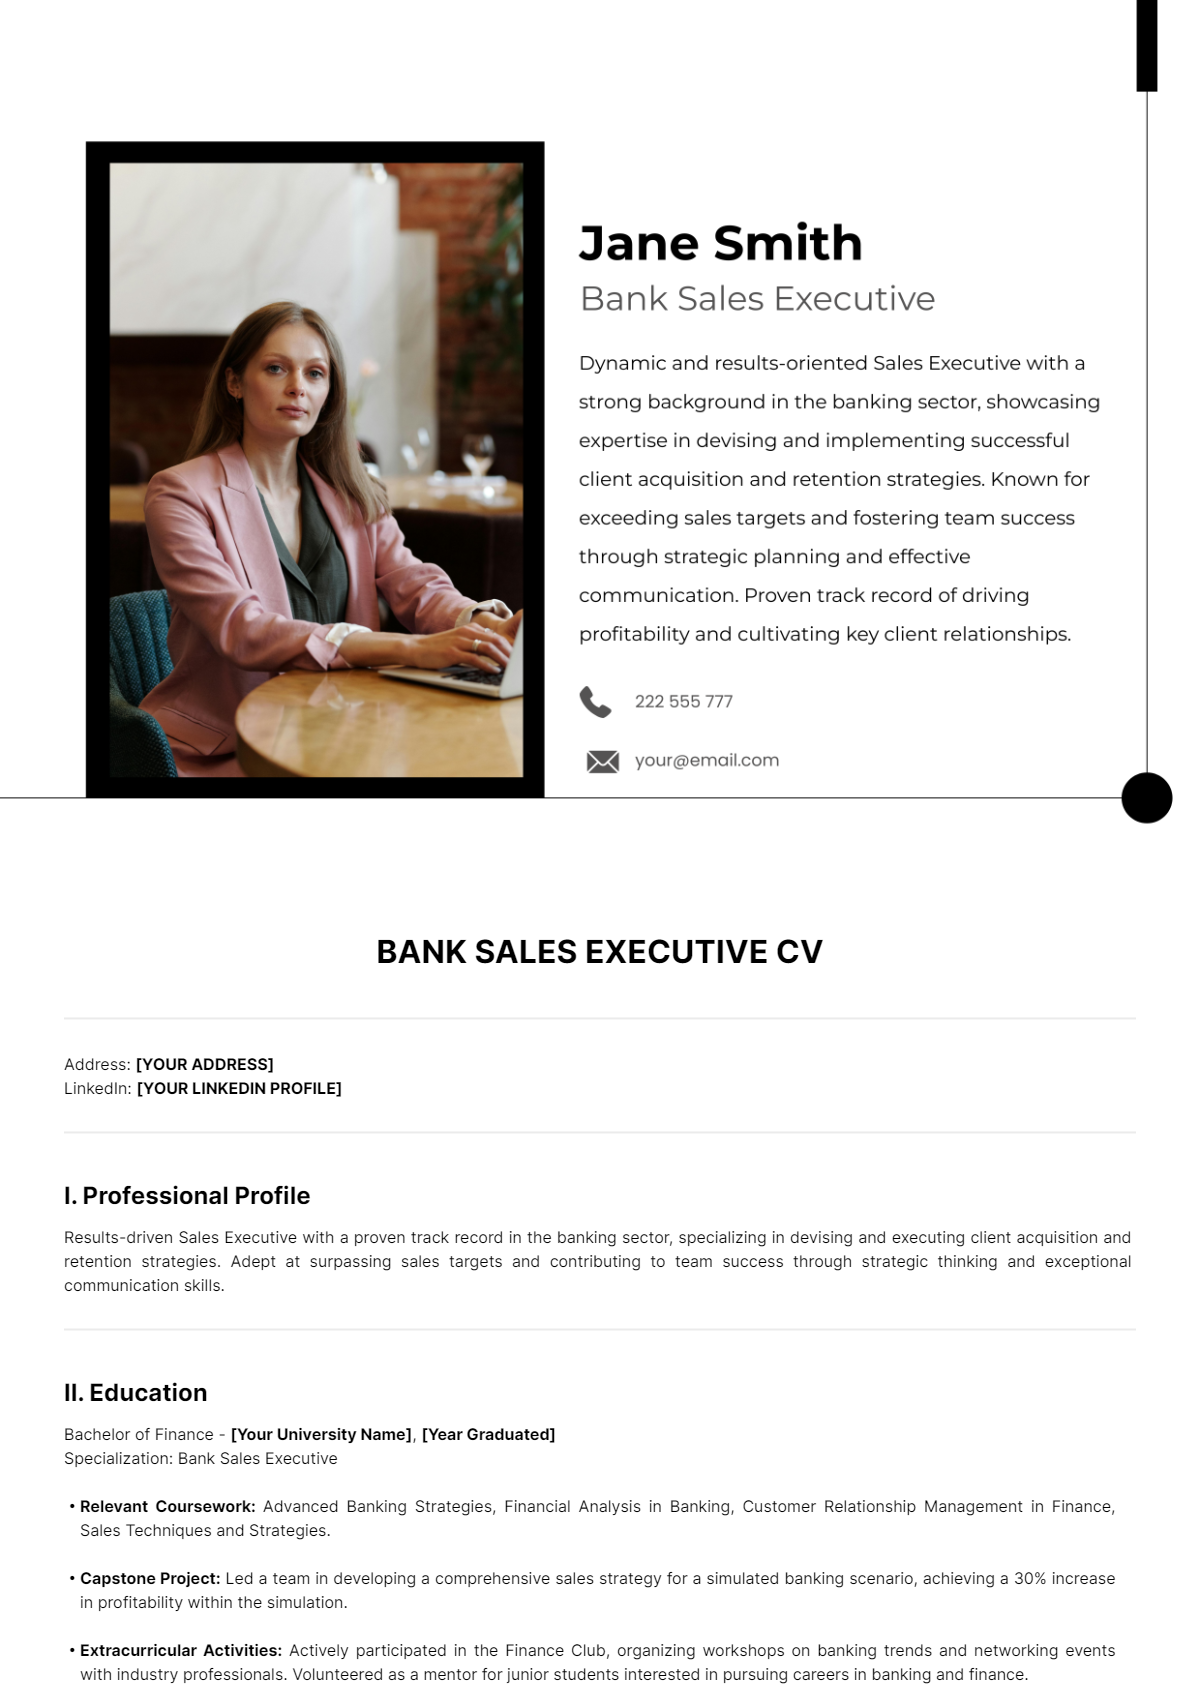 Bank Sales Executive CV Template